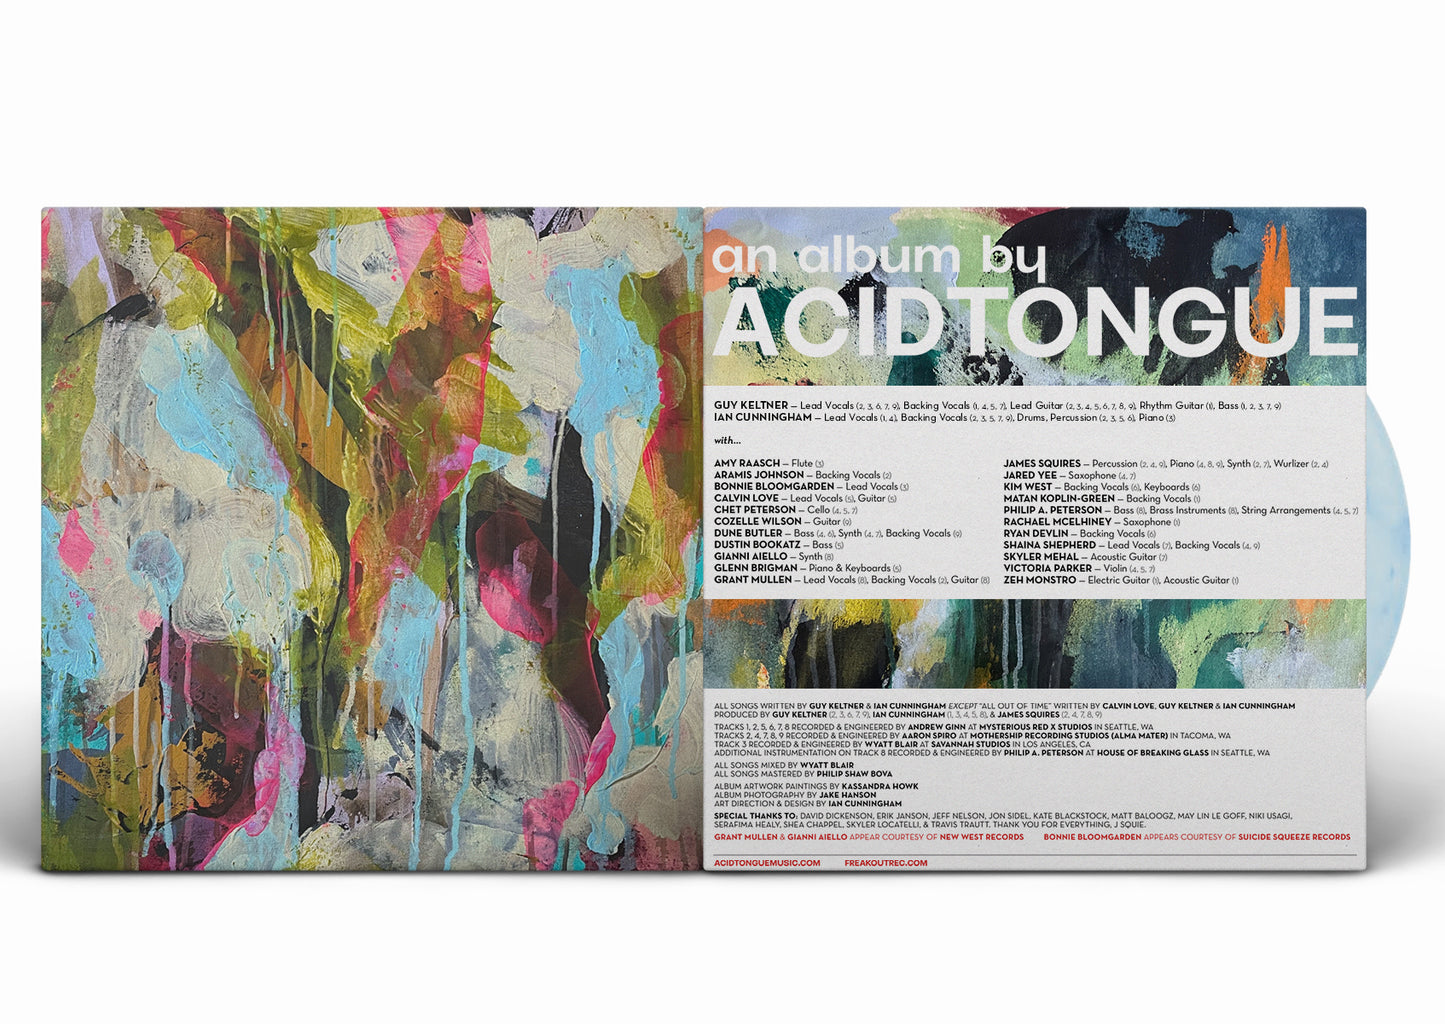 *PRE-ORDER* Acid Tongue - Arboretum - 12" Gatefold Colored Vinyl